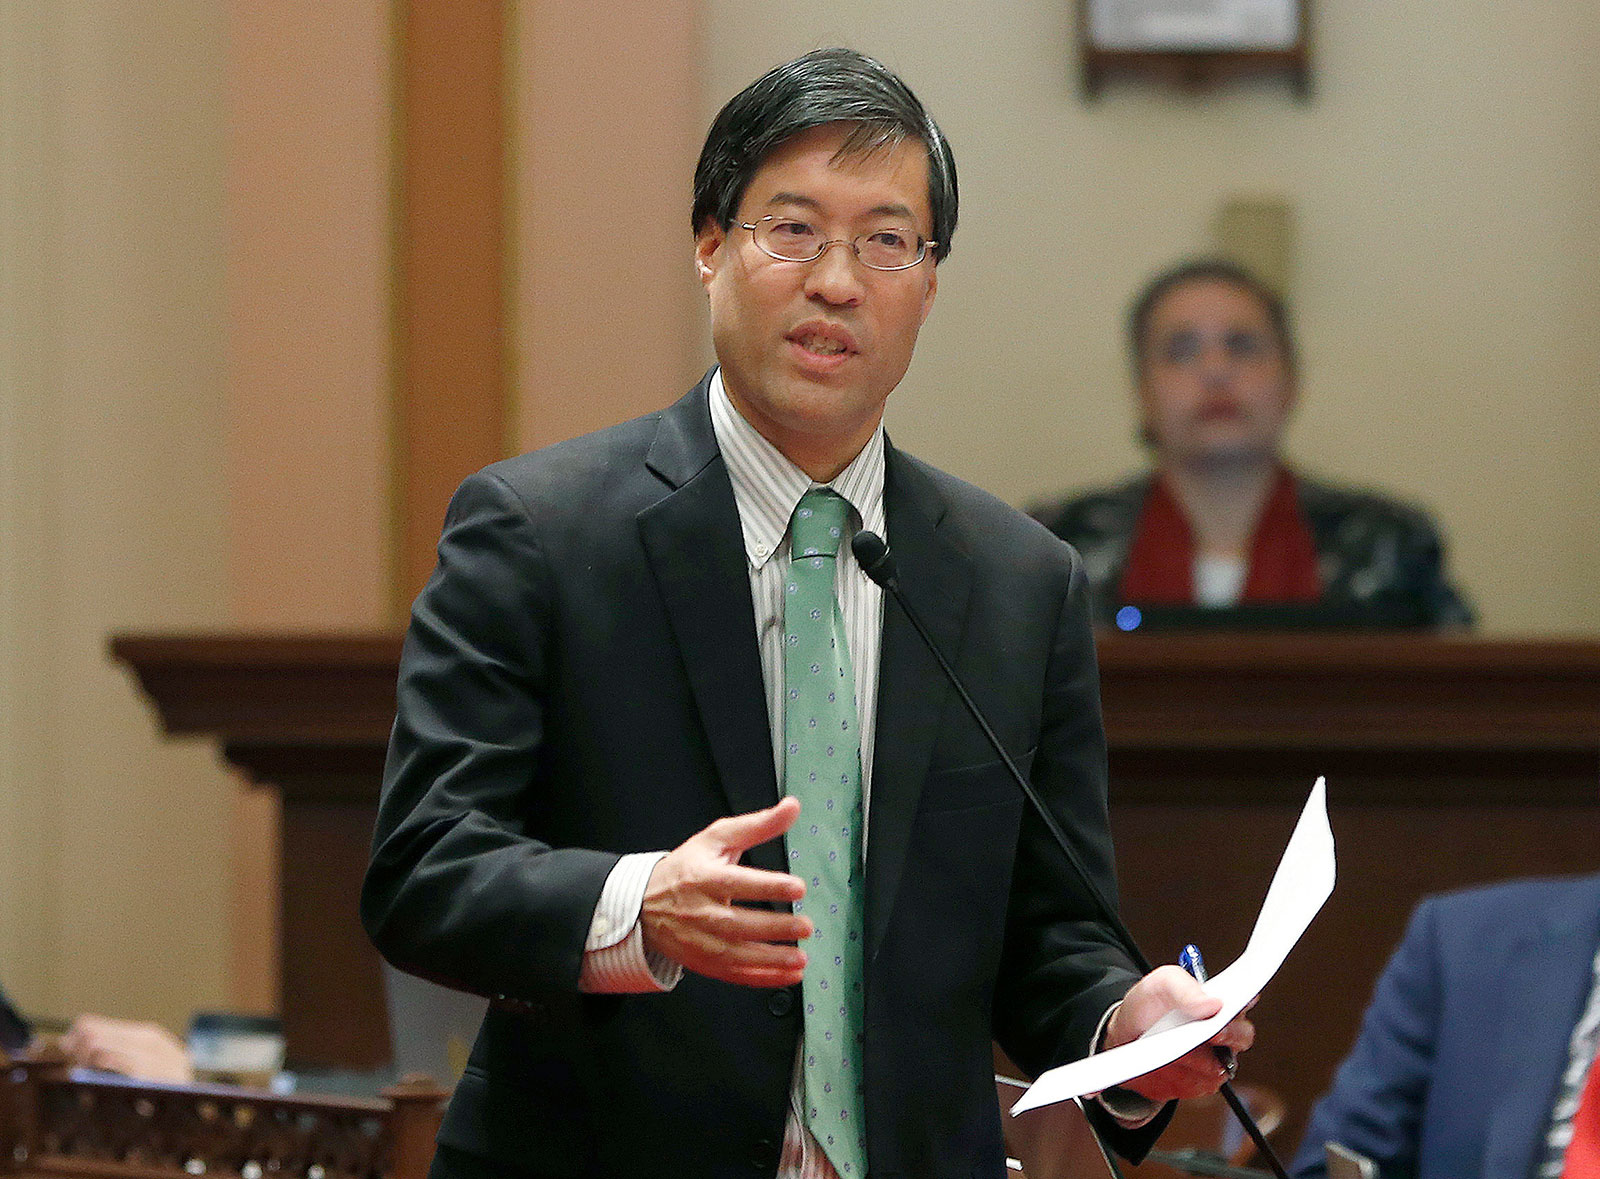 California State Sen. Richard Pan pictured in 2019.